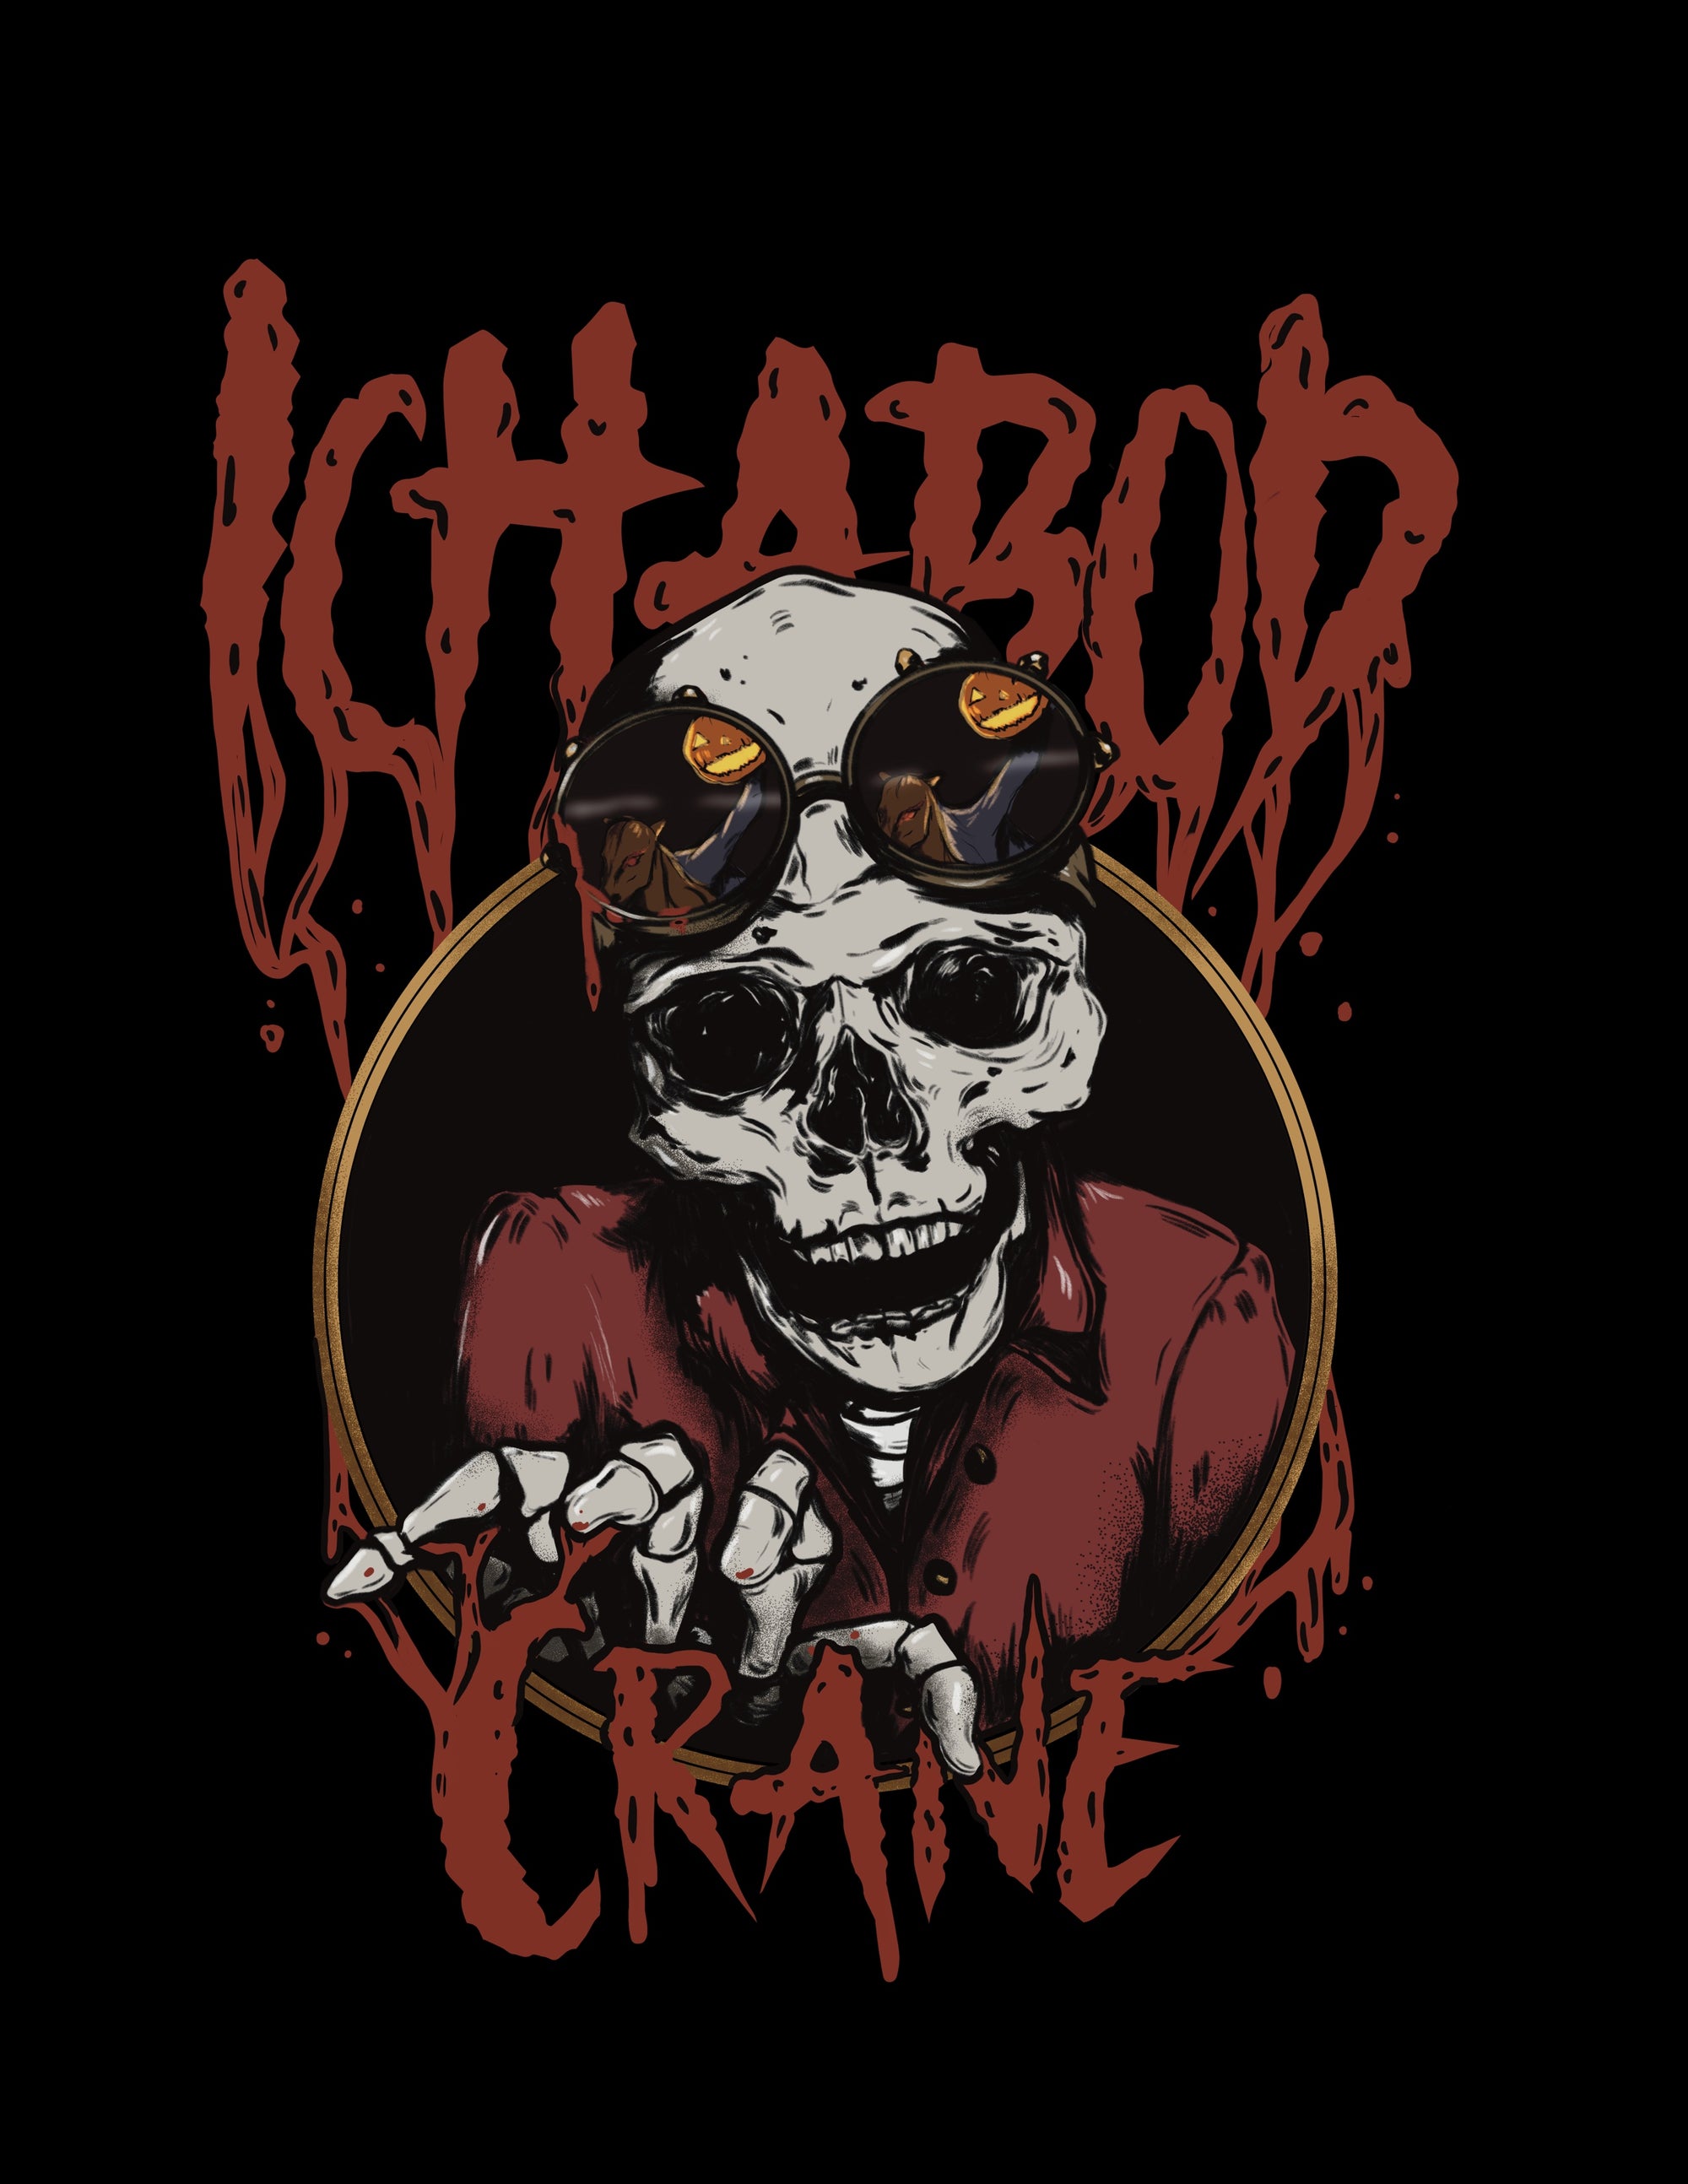 Ichabod Crane Band Tee